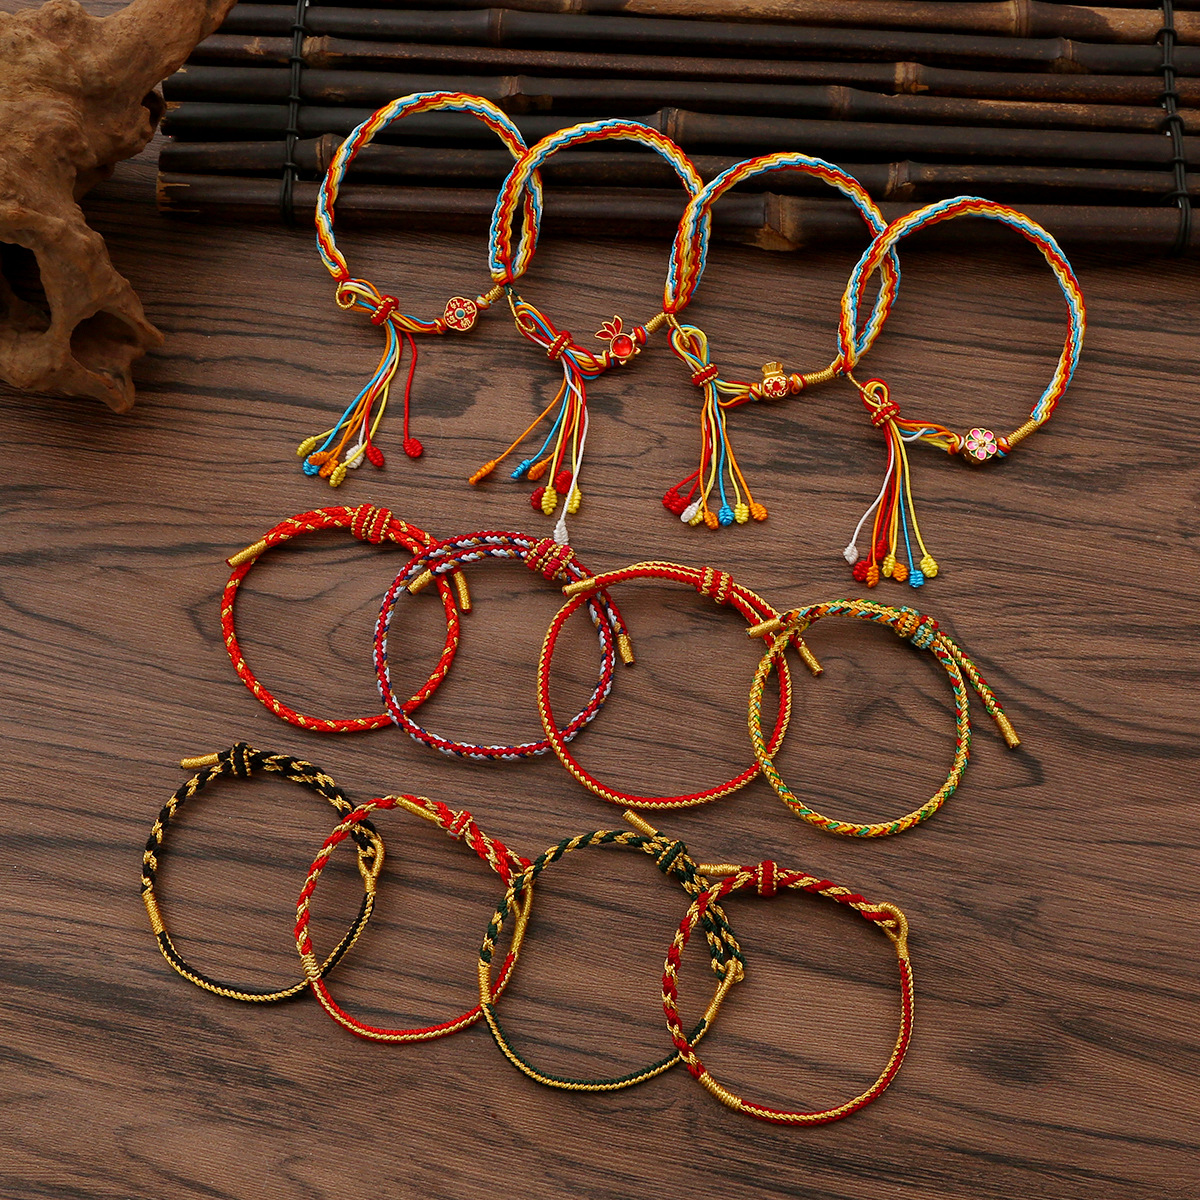 端午节手工编织手链民族风手绳儿童成人手编手绳可调节学生礼物